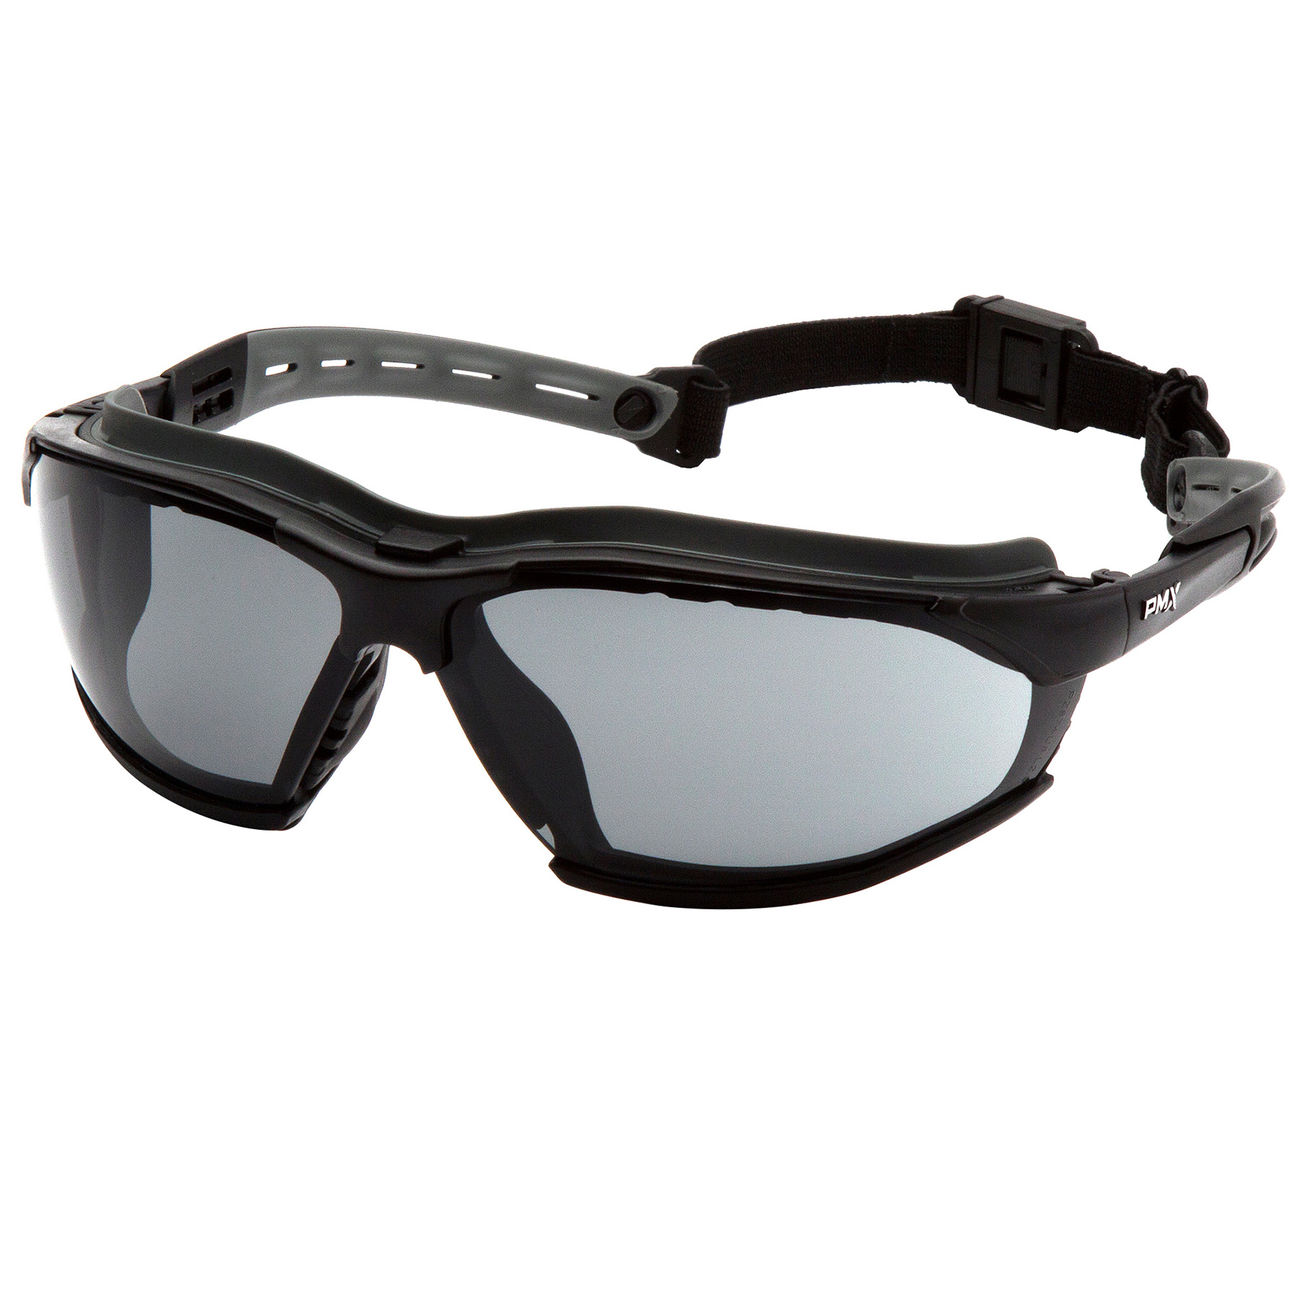 Neue staubdichte Anti-Fog-Augen-Schutzbrille Schutzbrille Schutzbrille GE 